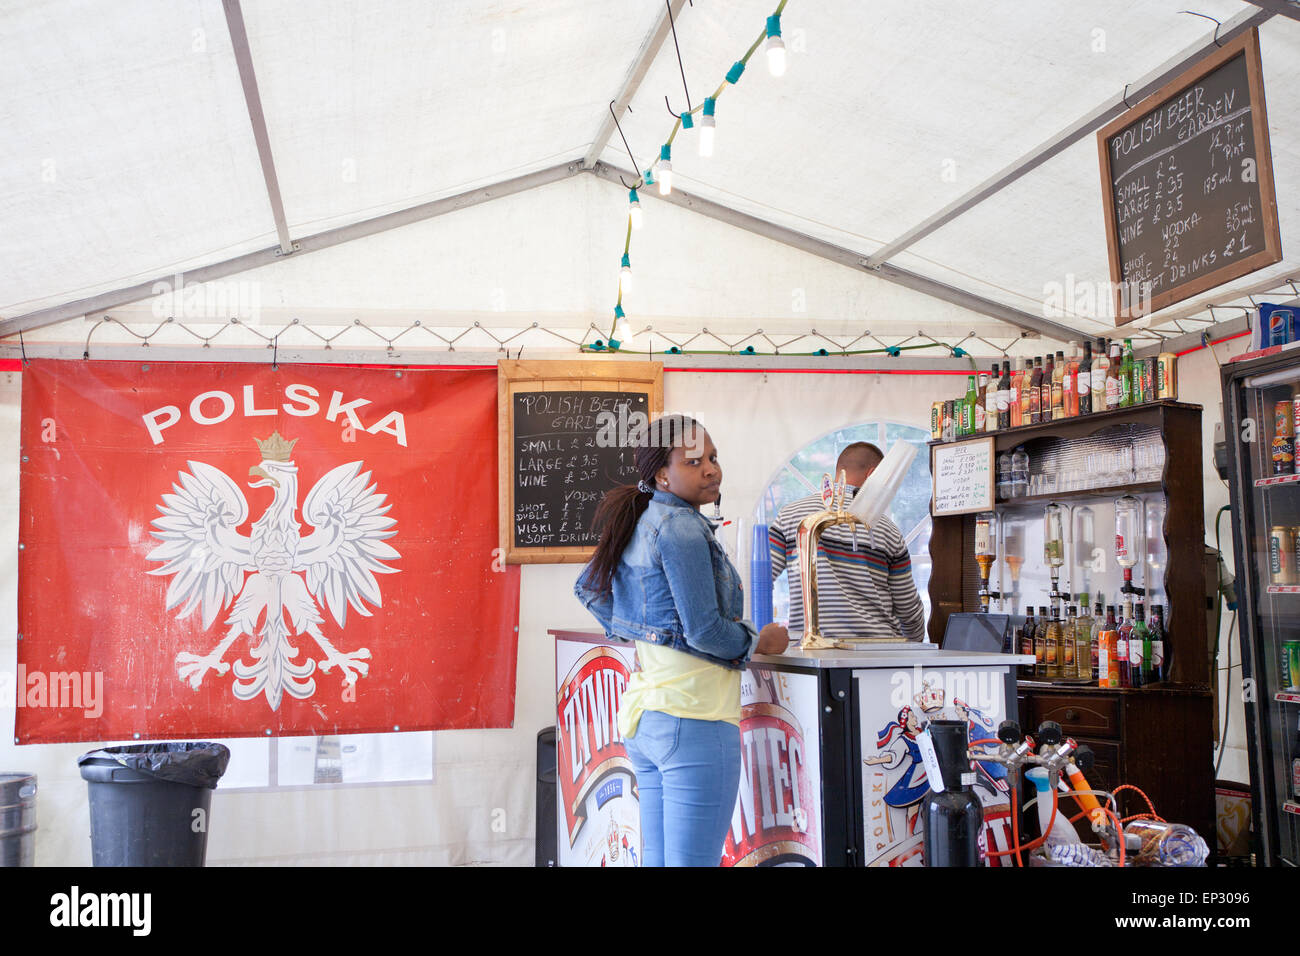 Eine Szene aus einer polnischen Bar während des Festivals von Bradford, 2013. Stockfoto